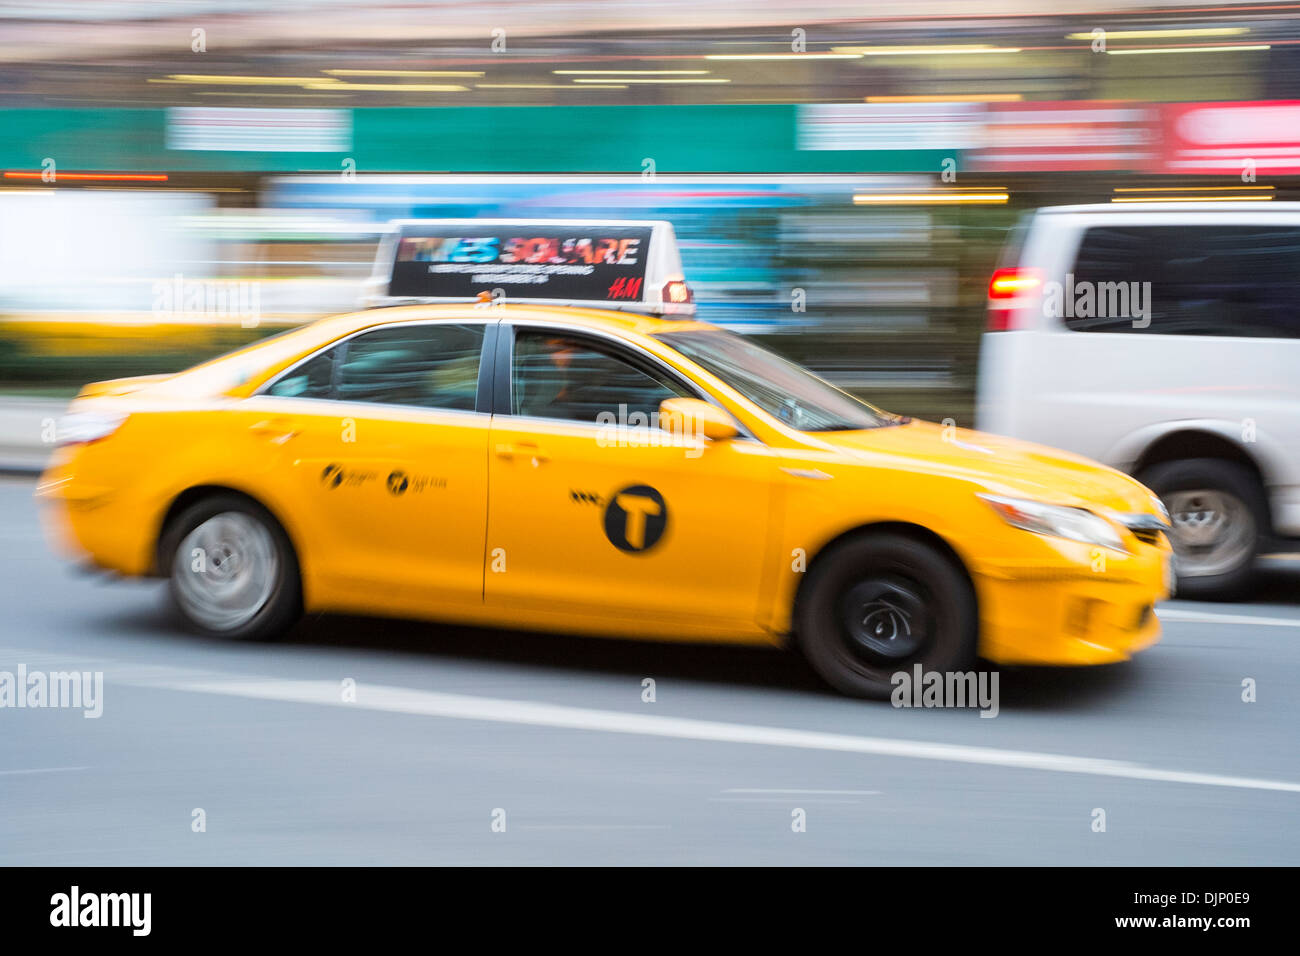 Nueva York, Estados Unidos - 21 de noviembre: el movimiento borroso shot de taxi amarillo famoso de Nueva York. El 21 de noviembre de 2013 en Nueva York. Foto de stock